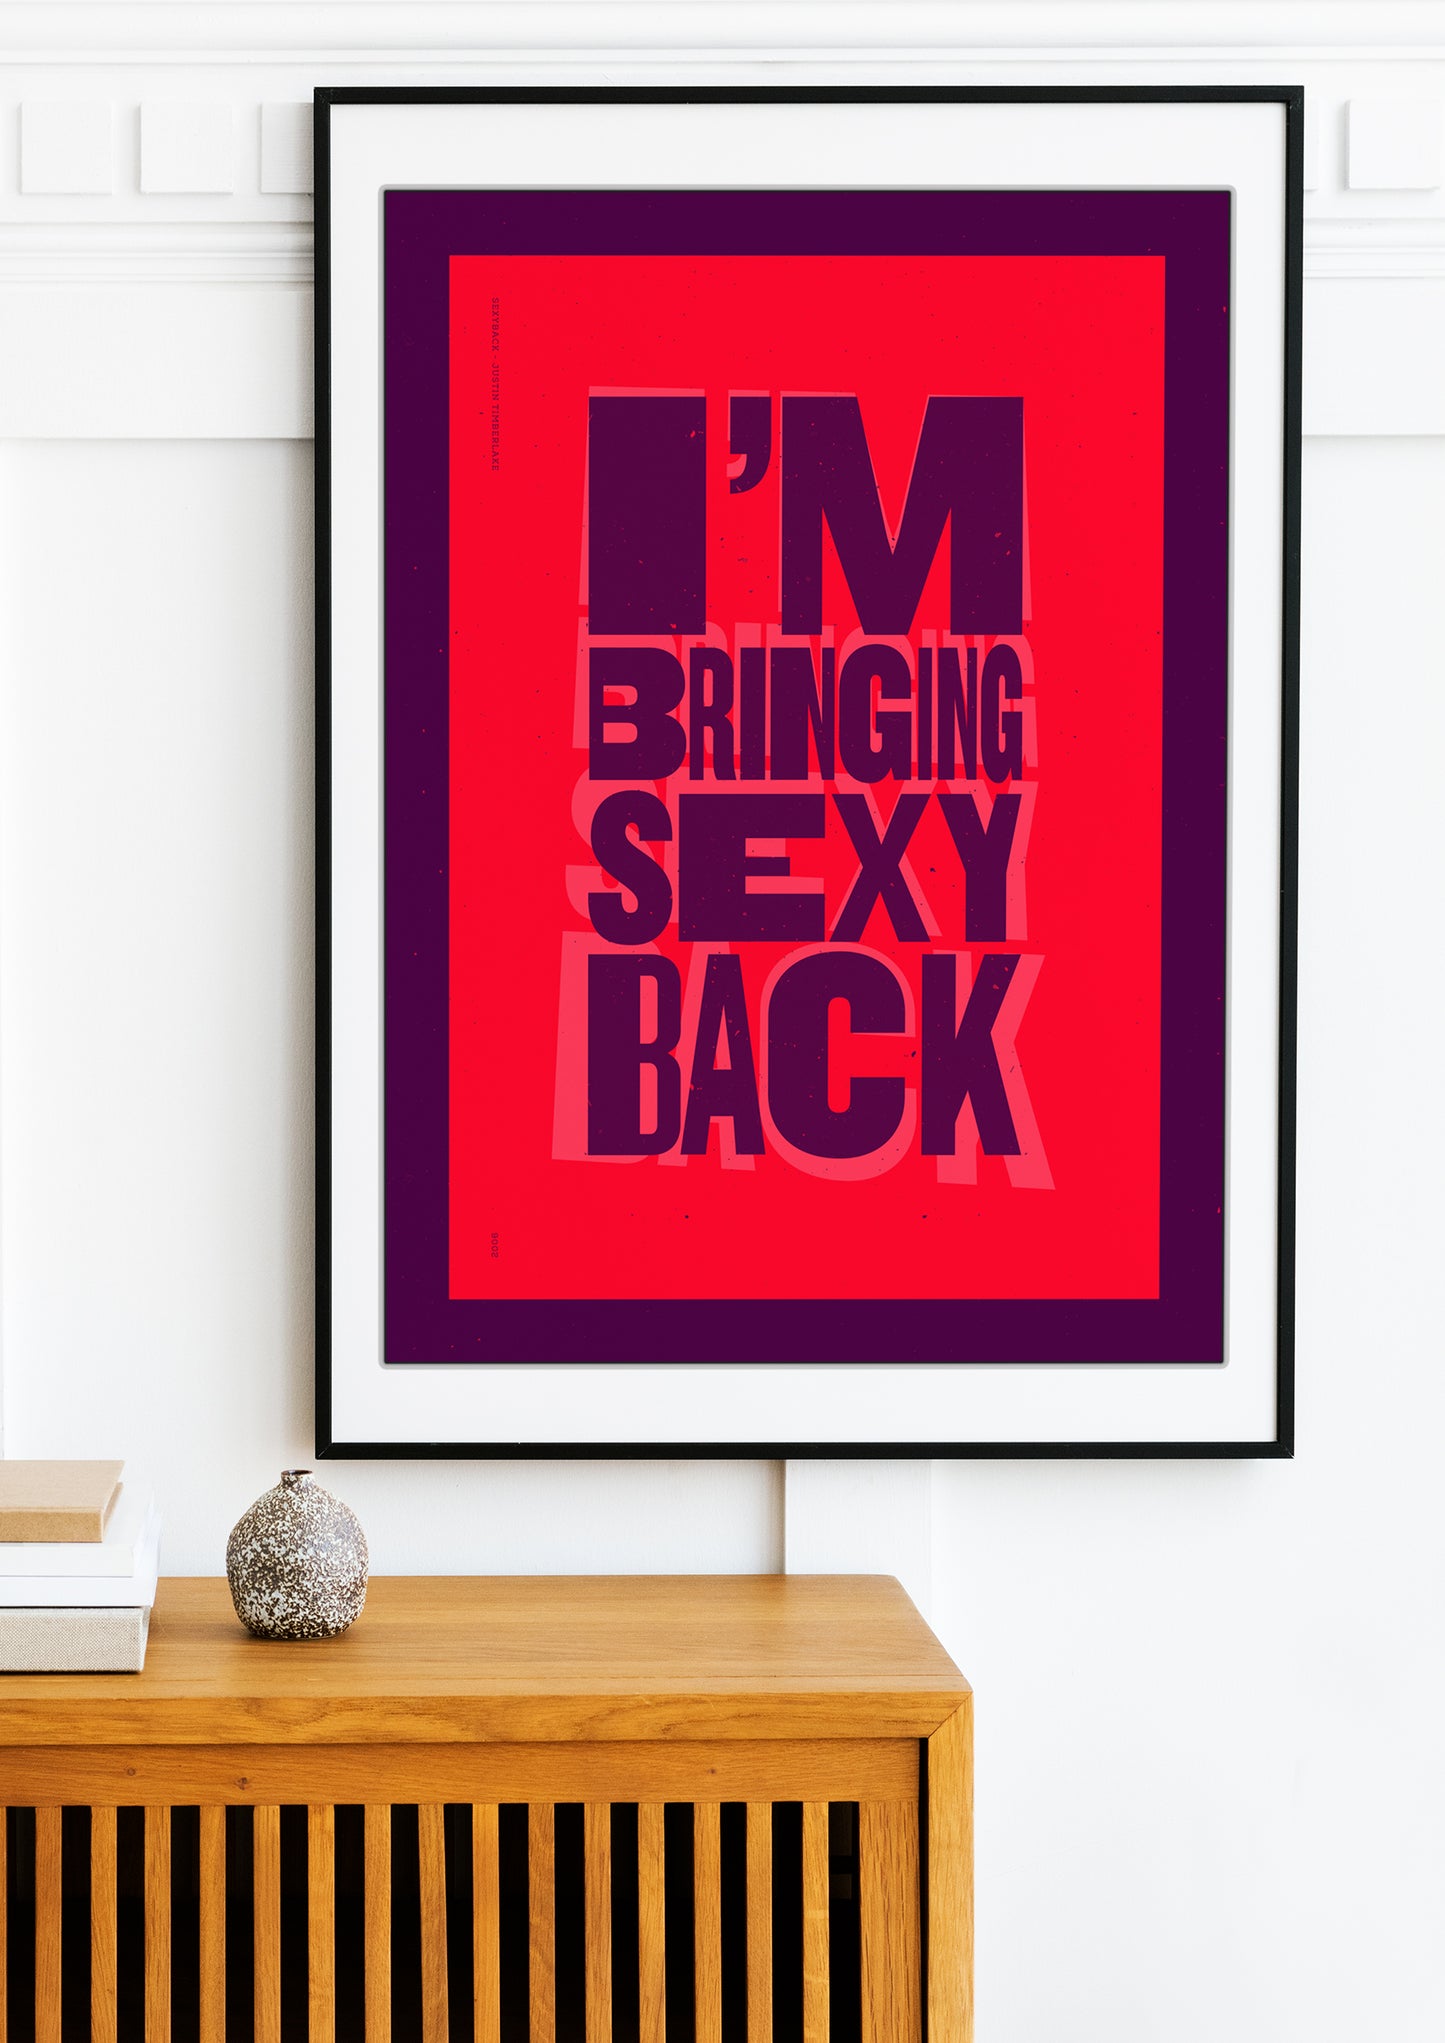 Justin Timberlake: Sexyback - Lyrics Prints.